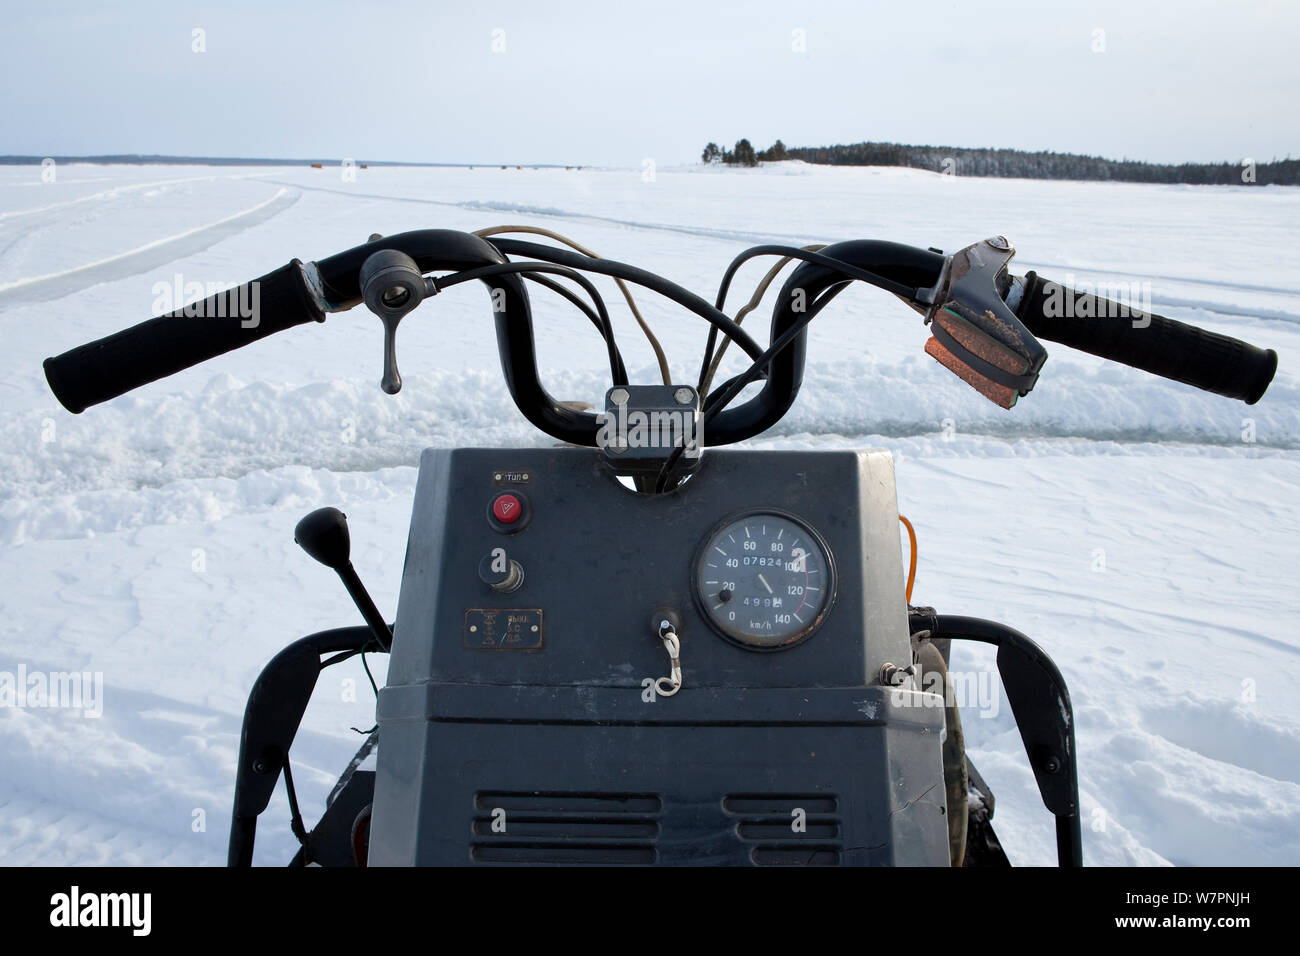 Quadro della strumentazione di ski-doo motoslitta, Circolo Polare Artico Dive Center, Mare Bianco, Carelia, Russia settentrionale, Marzo 2010 Foto Stock